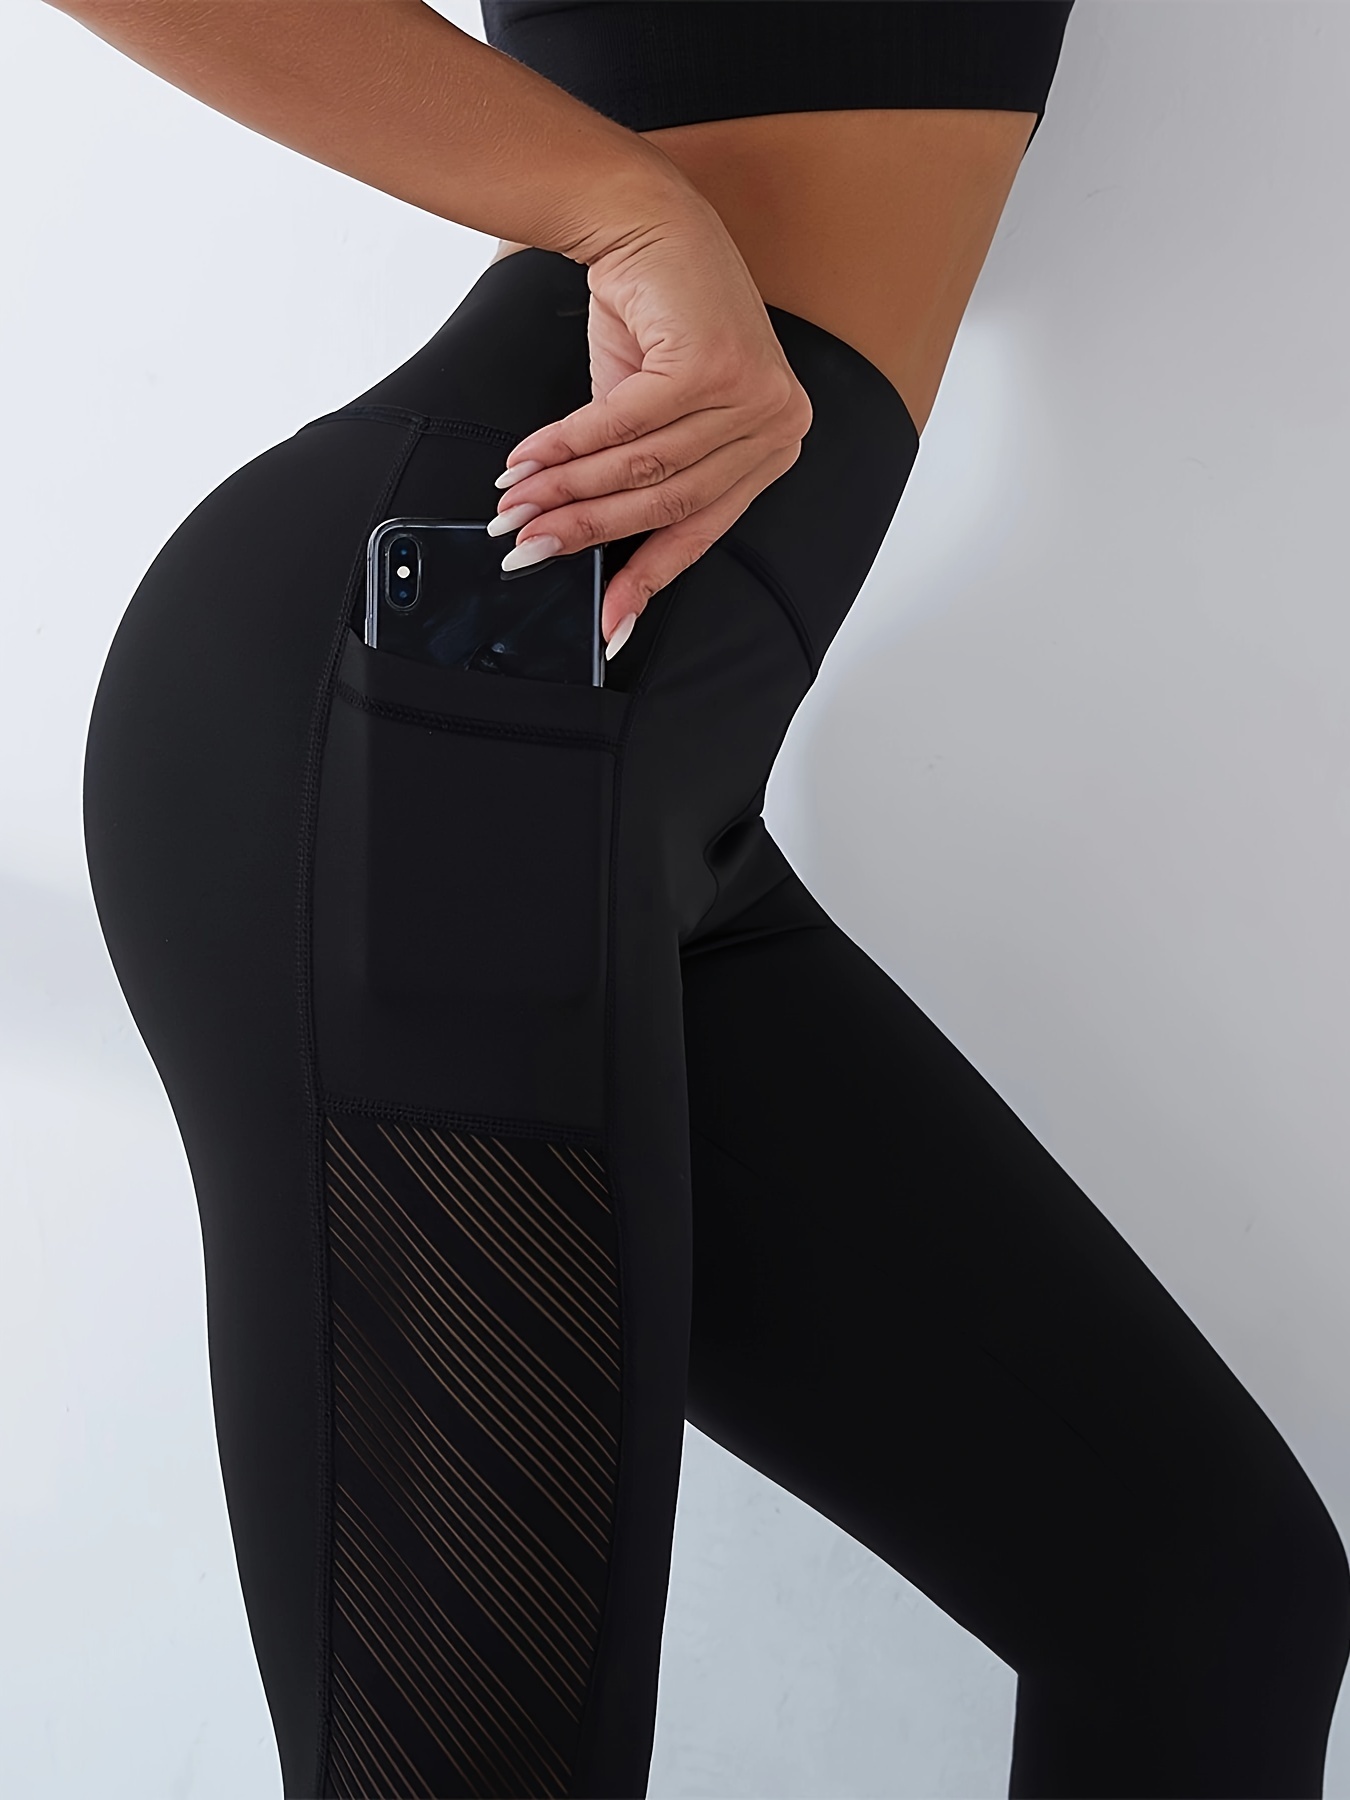 Women's High Waisted Sports Capri Leggings - Slim Fit, Elastic & Breathable  For Yoga & Running!